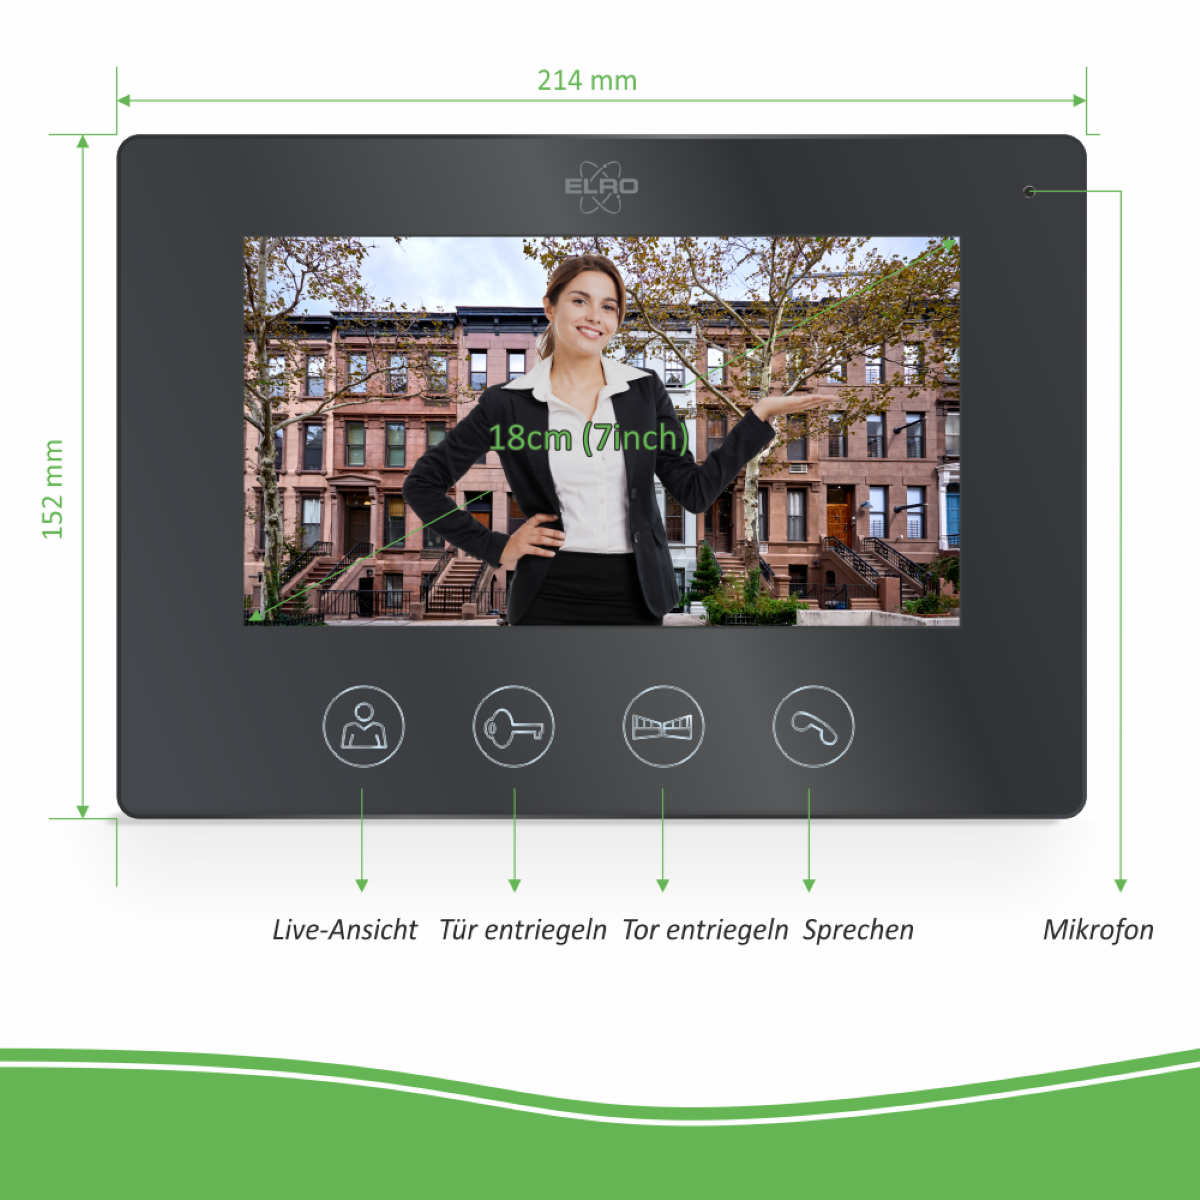 Schwarz DV50 Türsprechanlage Monitor App, mit und ELRO Verdrahtete